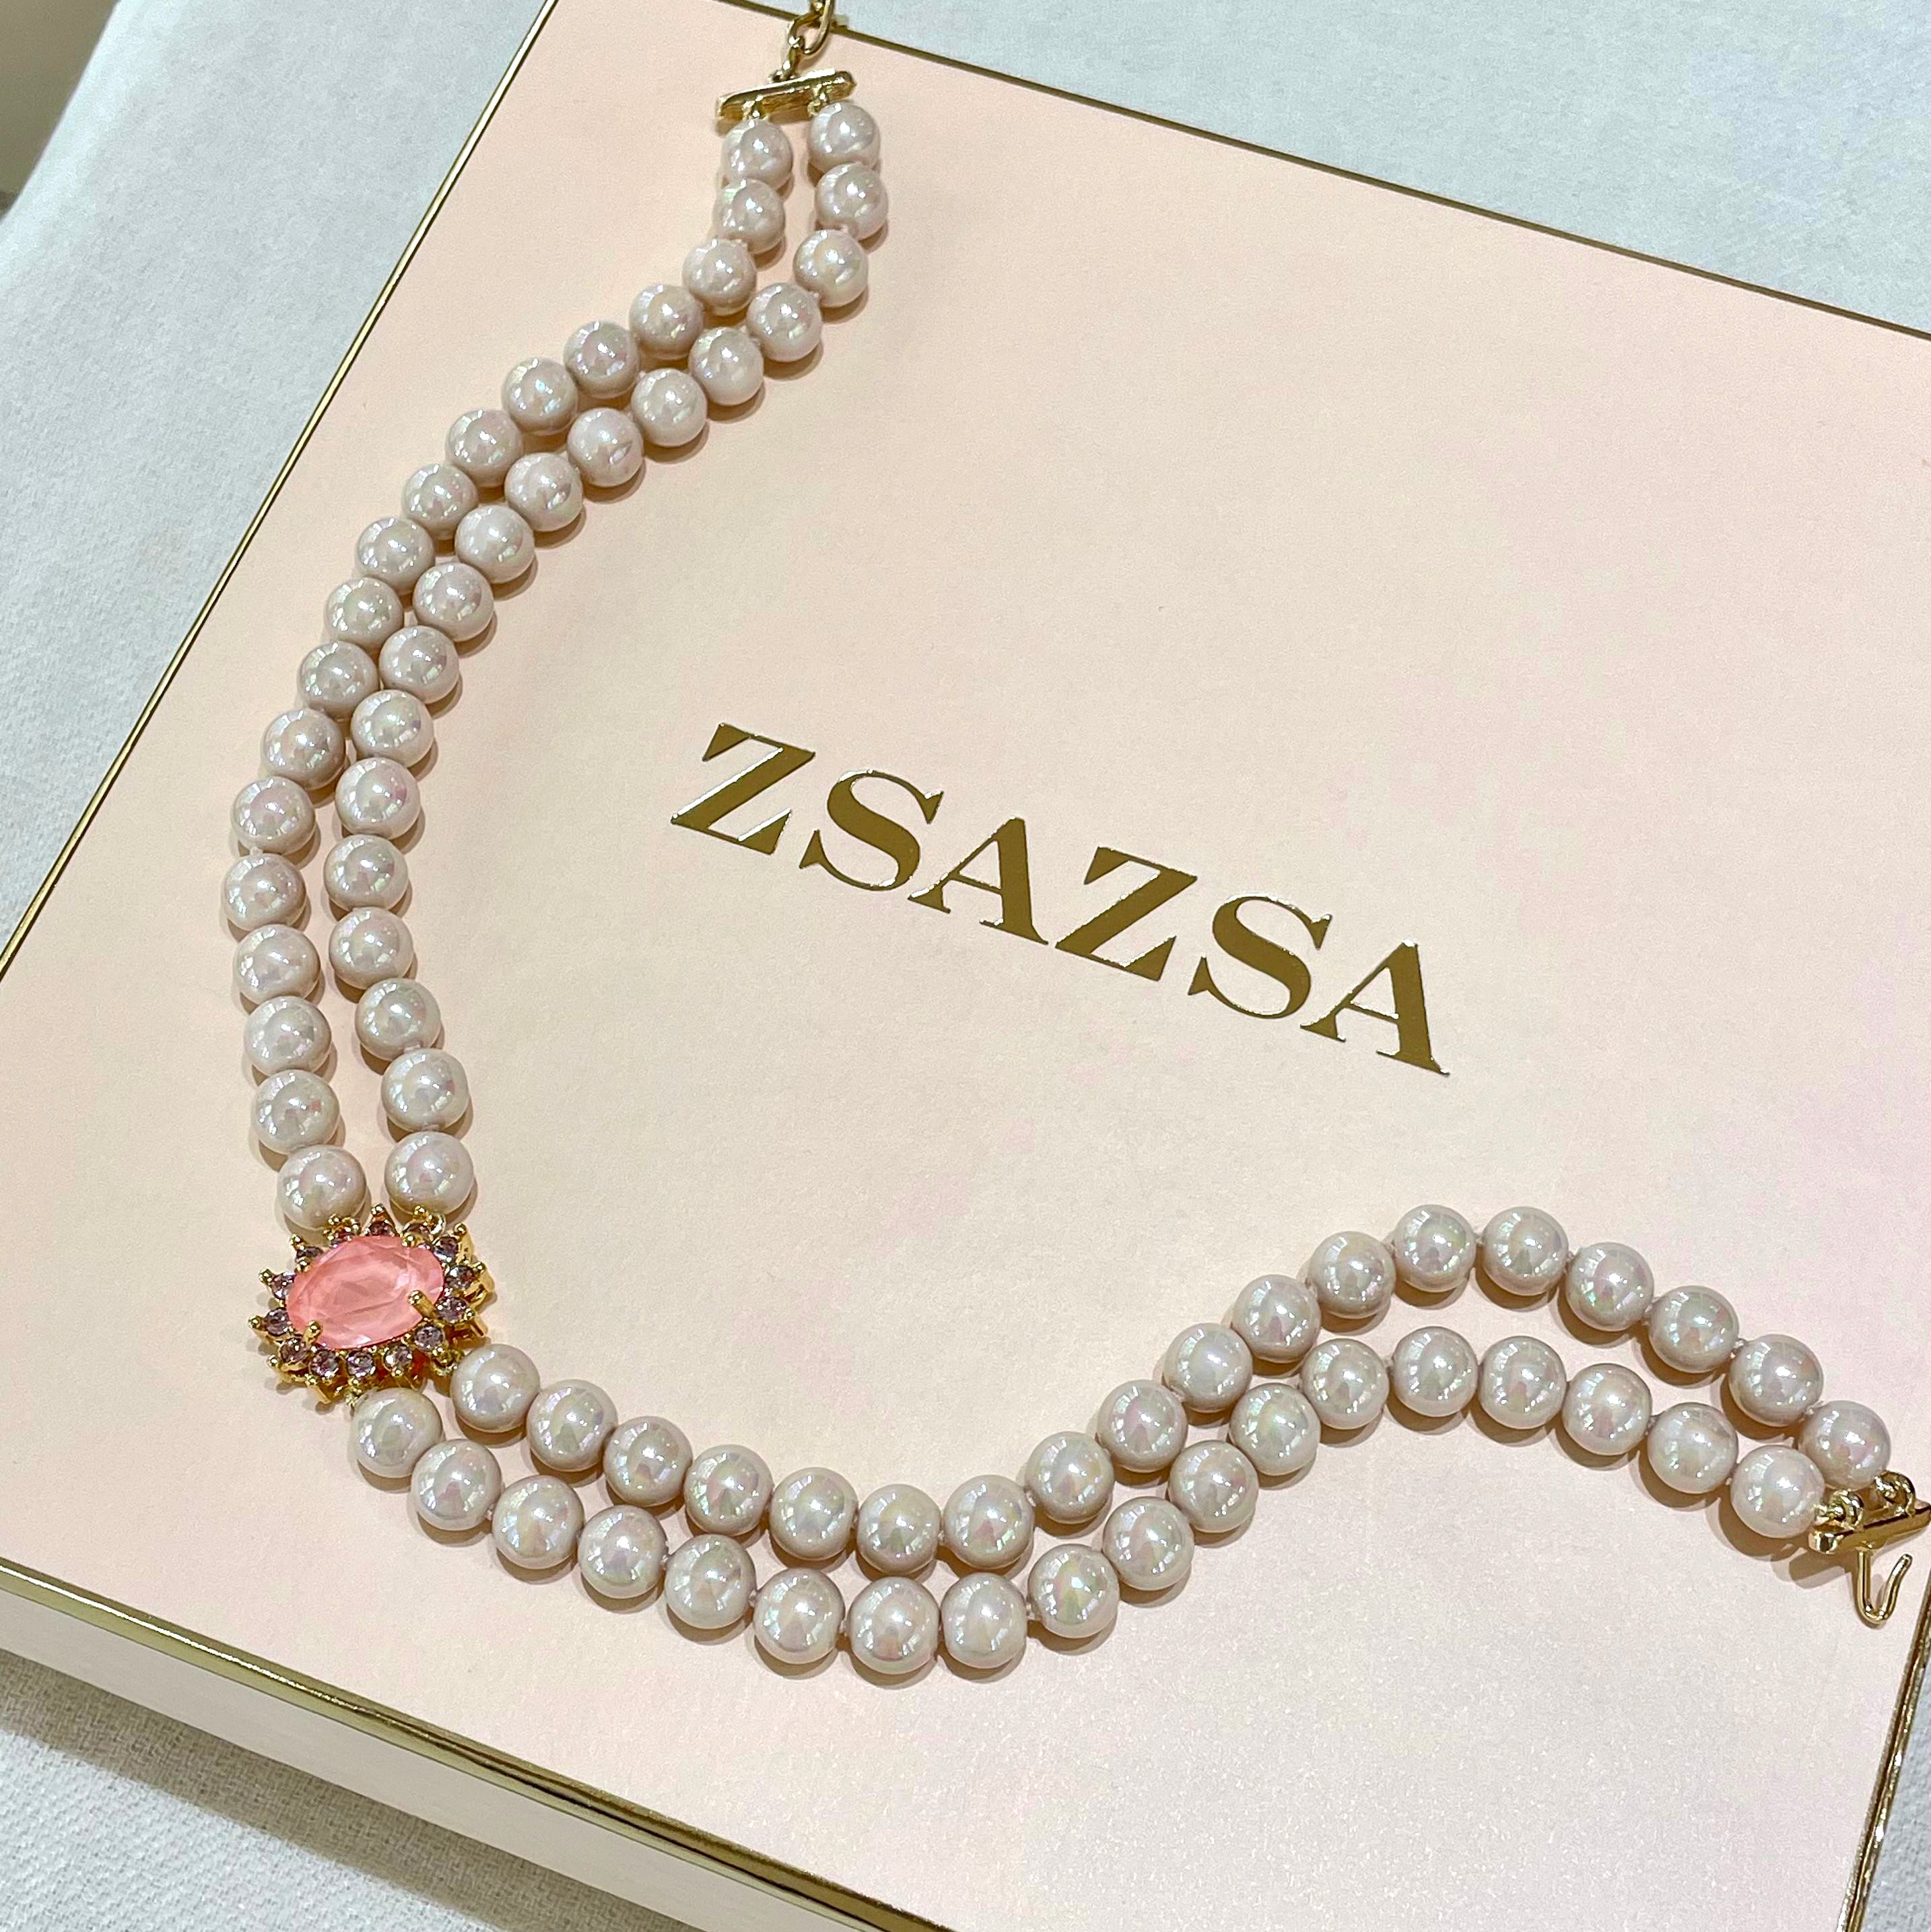 Pink Mallorca pearls with Swarosvki crystals choker